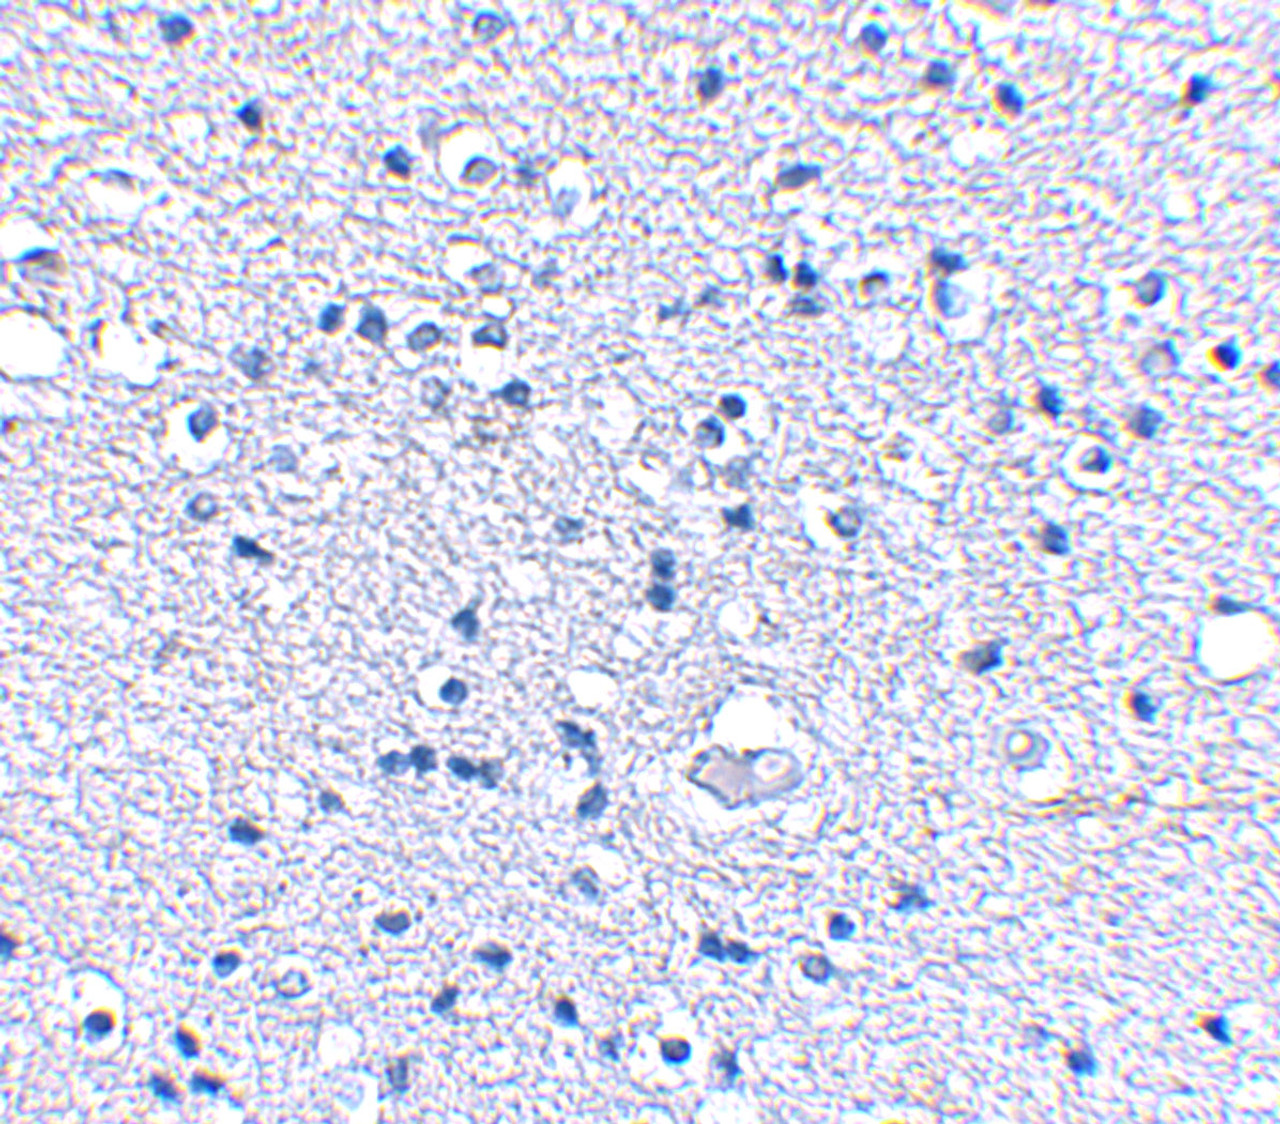 Immunohistochemical staining of human brain tissue using Grik4 antibody at 2.5 ug/mL.